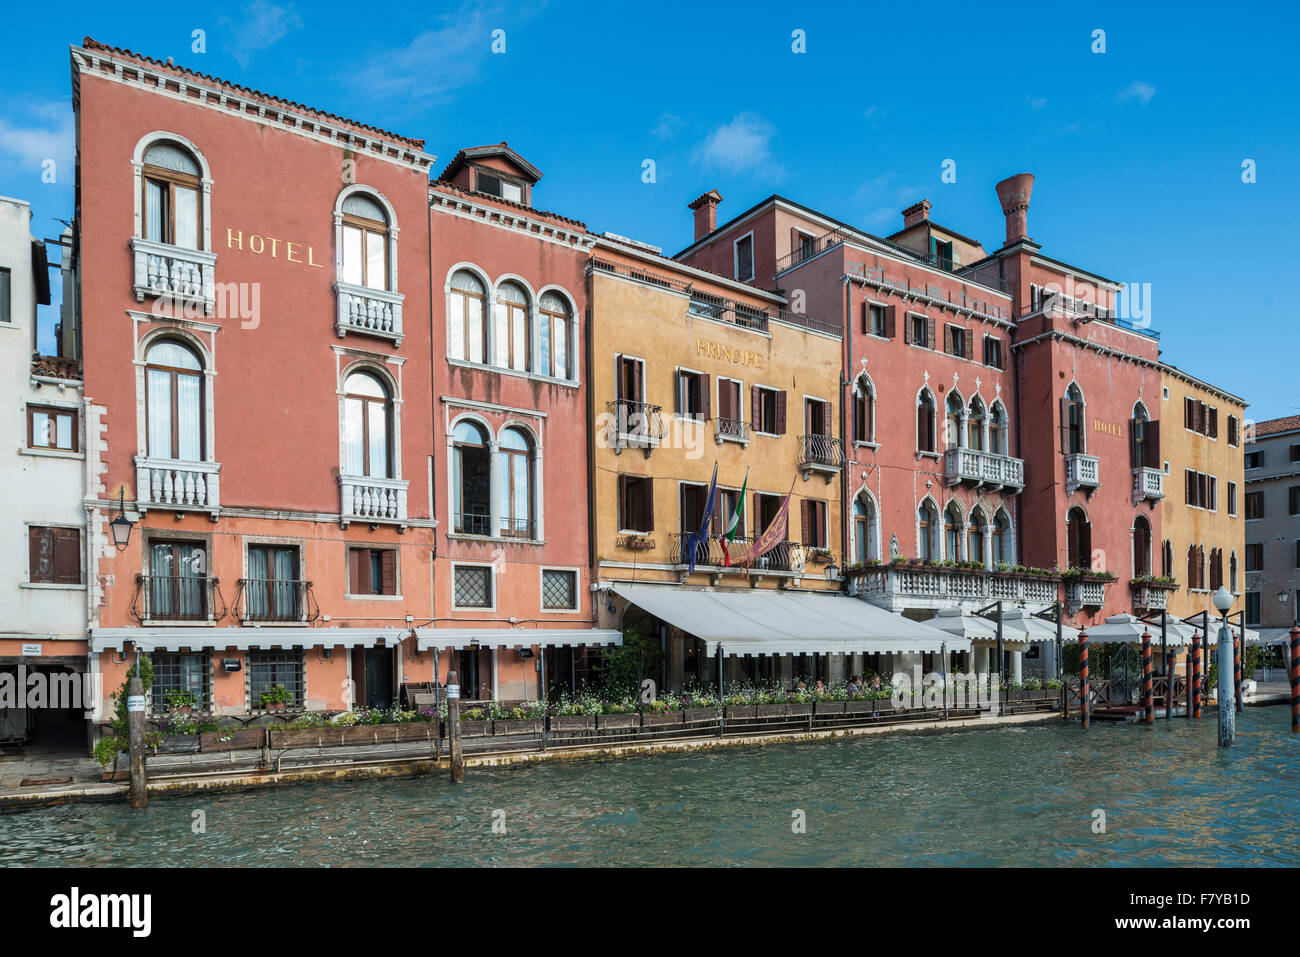 Hotel Principe, Grand Canal, Cannaregio, Venice, Veneto, Italy Stock Photo